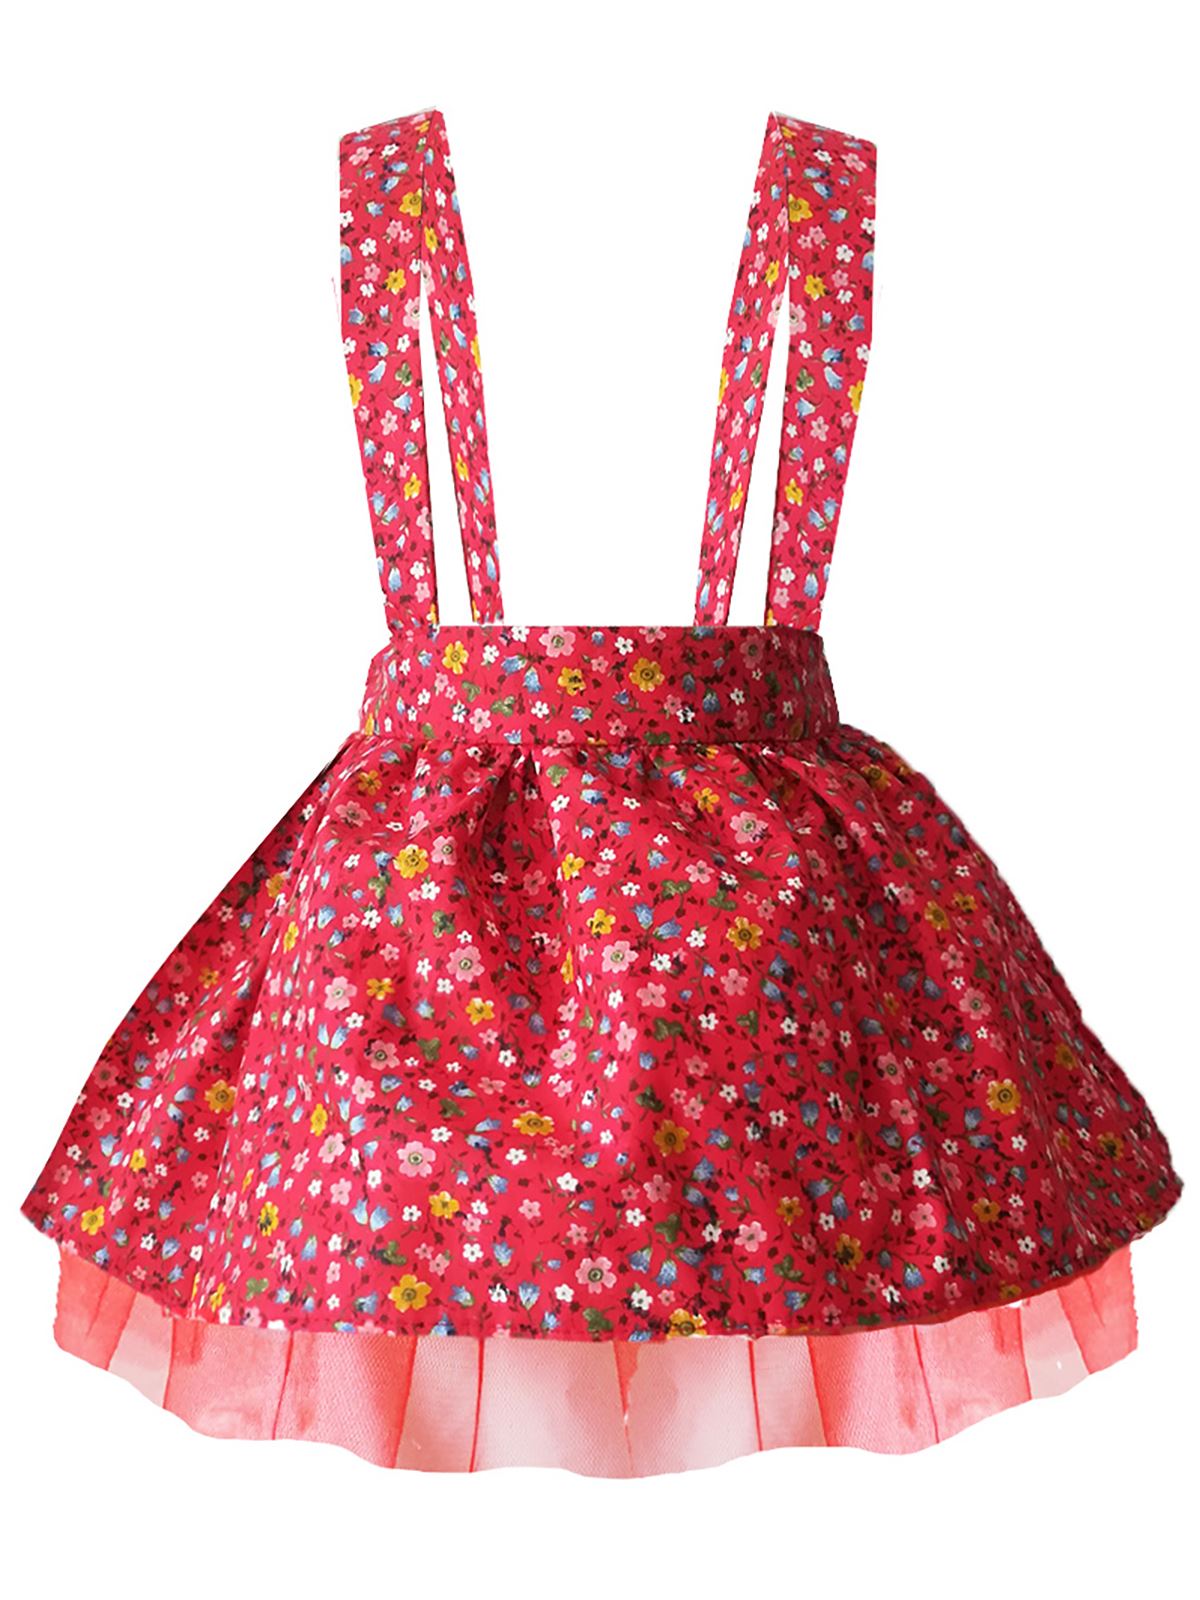 Shecco Babba Kız Çocuk Elbise Tütü Kırmızı Çiçekli 5-8 Yaş